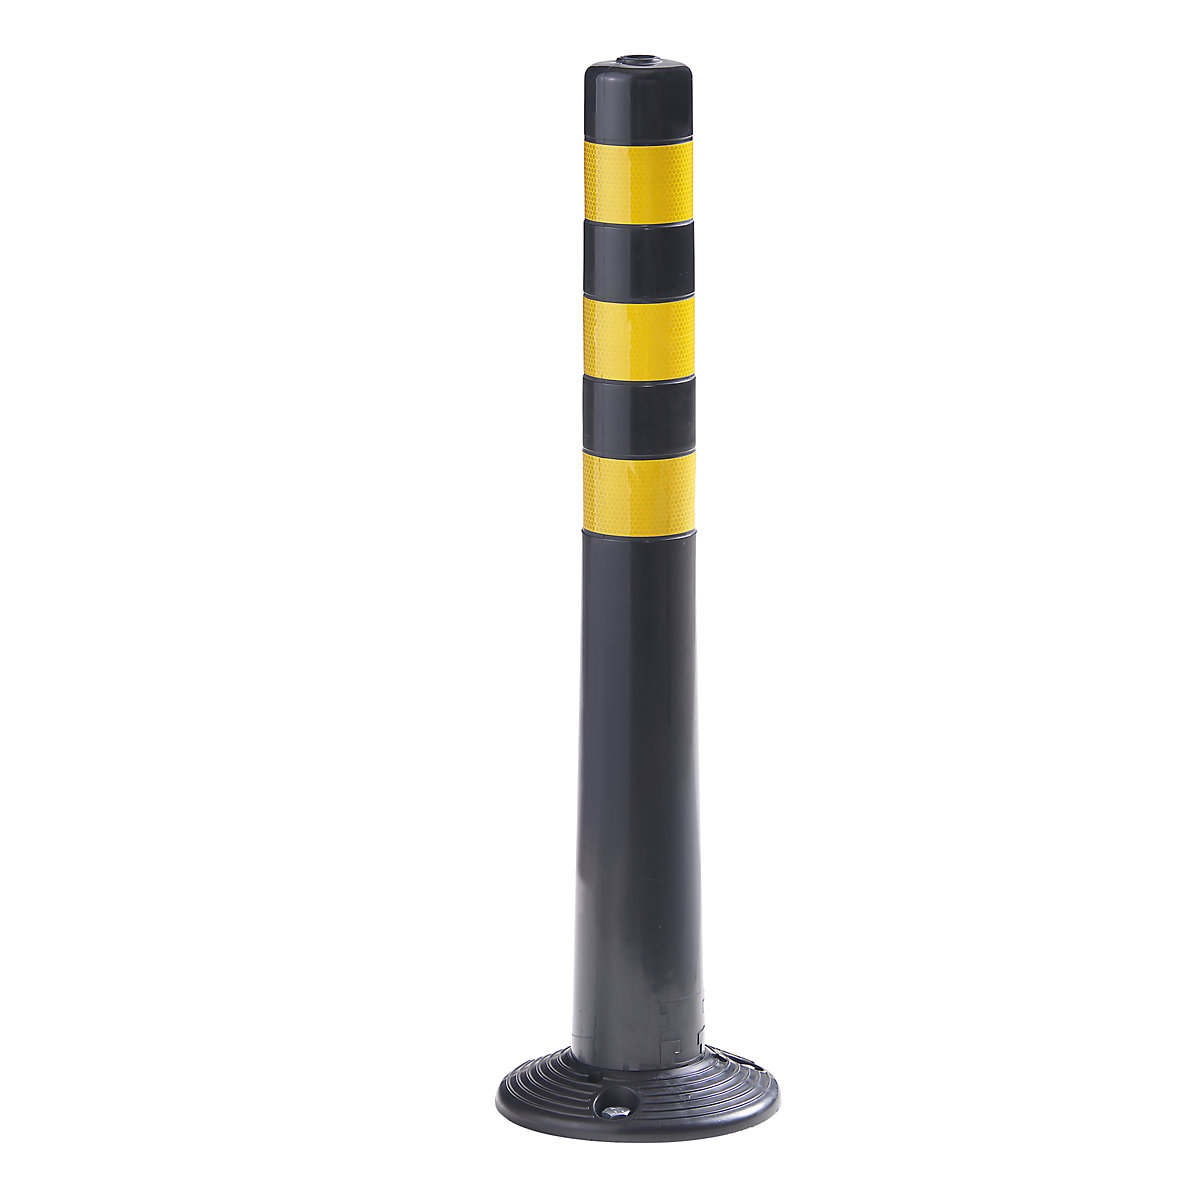 Poste de barreira, embalagem de 2 unid., altura 750 mm, preto/amarelo